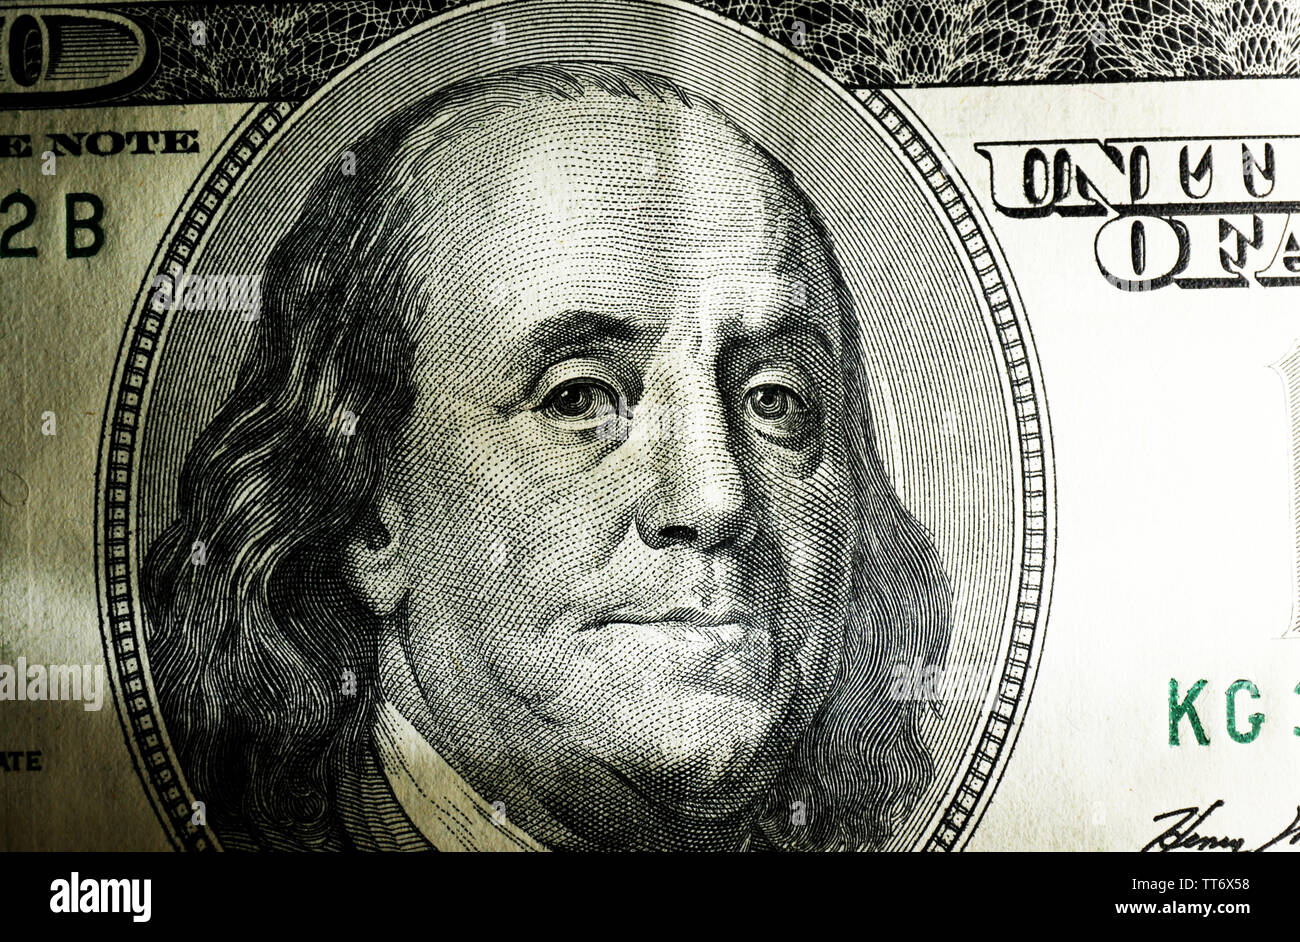 Dollar face close-up Stock Photo - Alamy